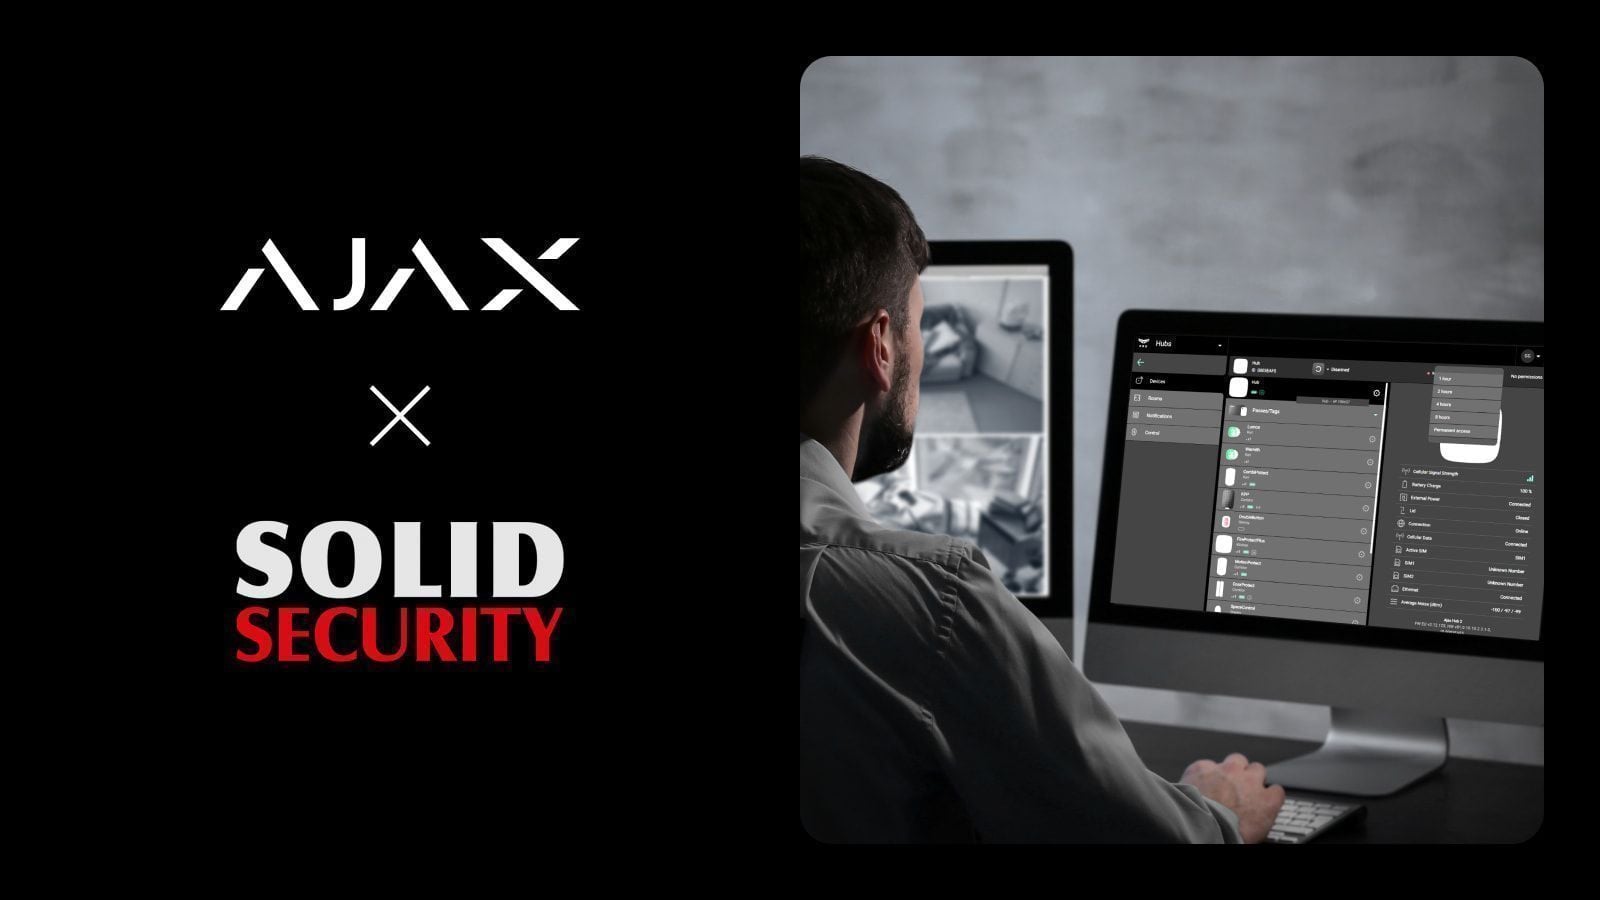 A Ajax Systems faz parceria com a Solid Security na Polónia